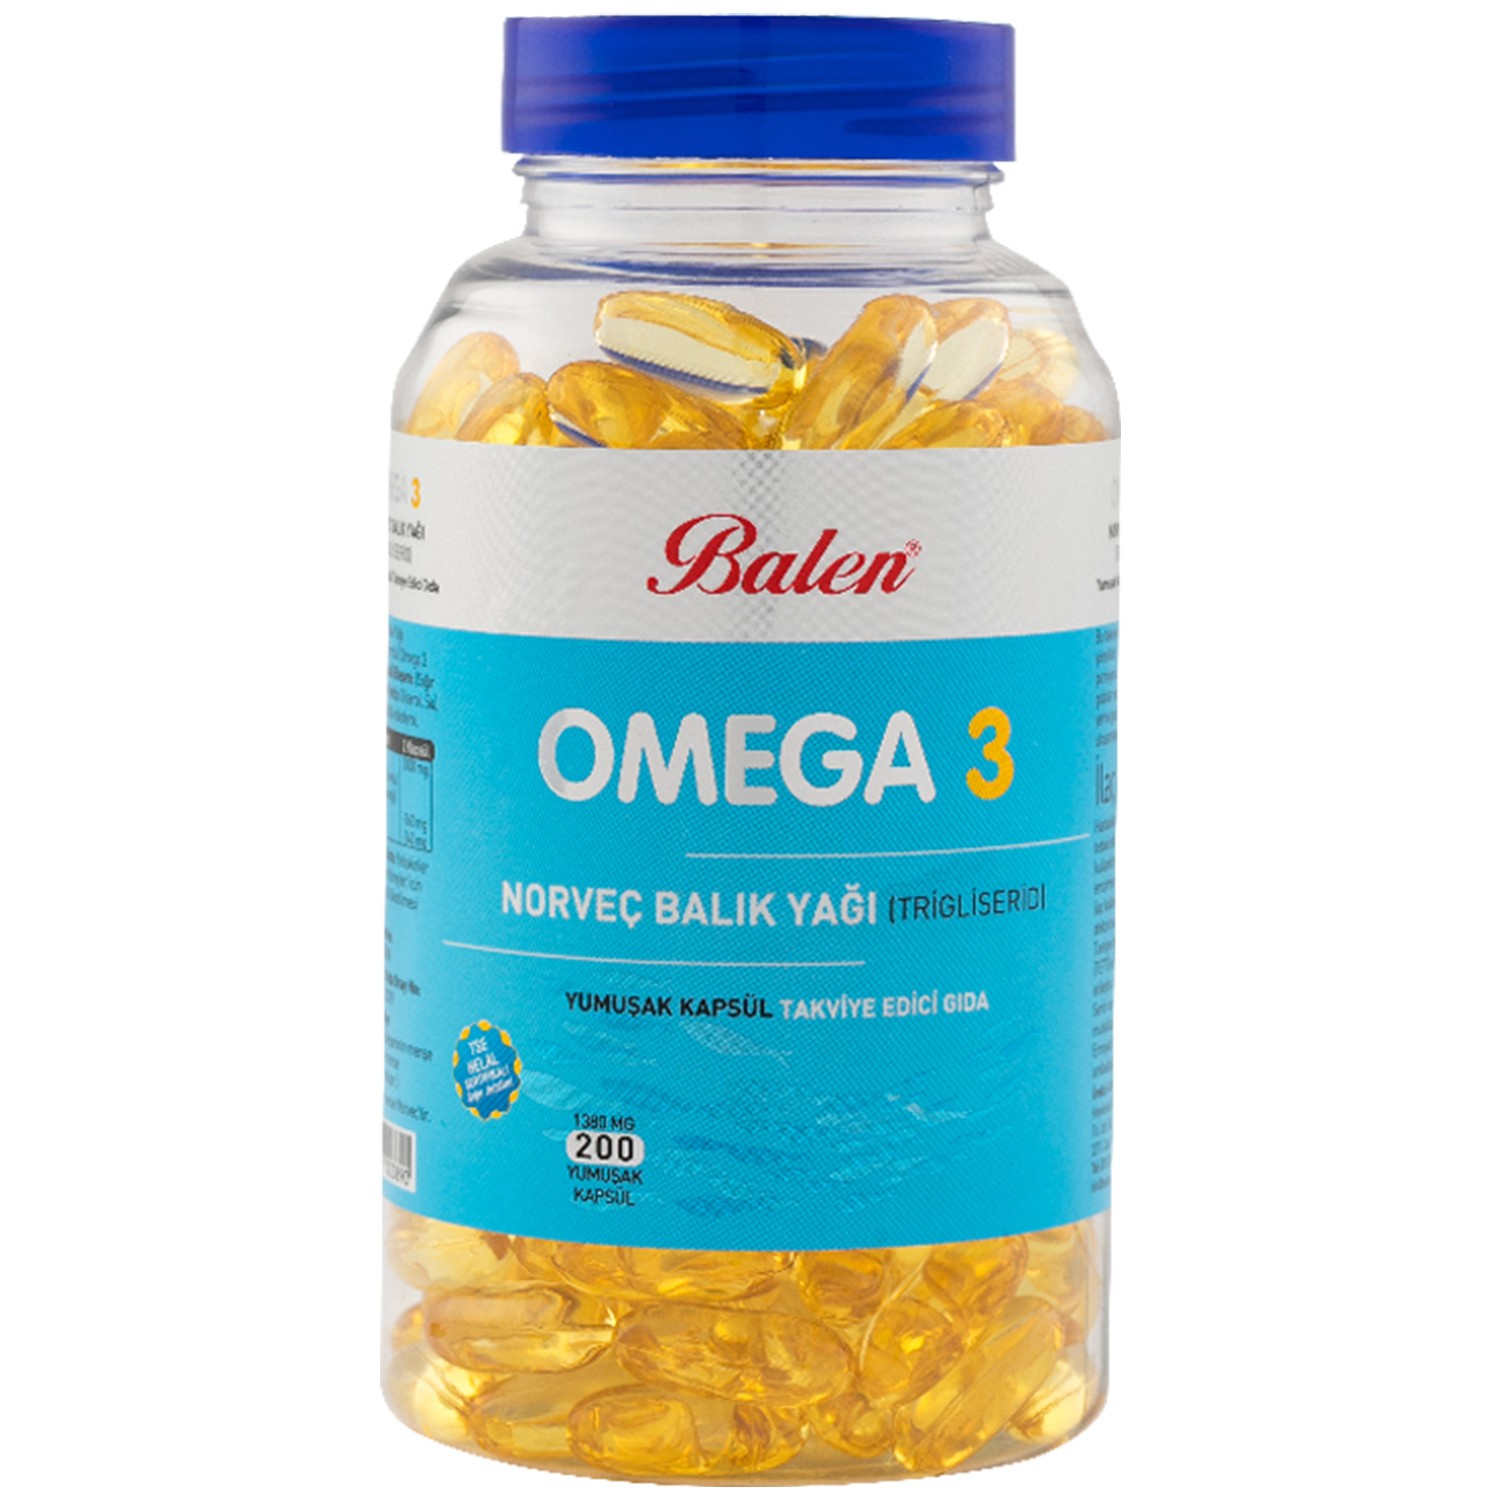 Рыбий жир Balen Omega 3, 200 капсул, 1380 мг ready pet go omega health chews поддержка кожи и шерсти для собак всех возрастов рыбий жир сыр 90 мягких жевательных таблеток